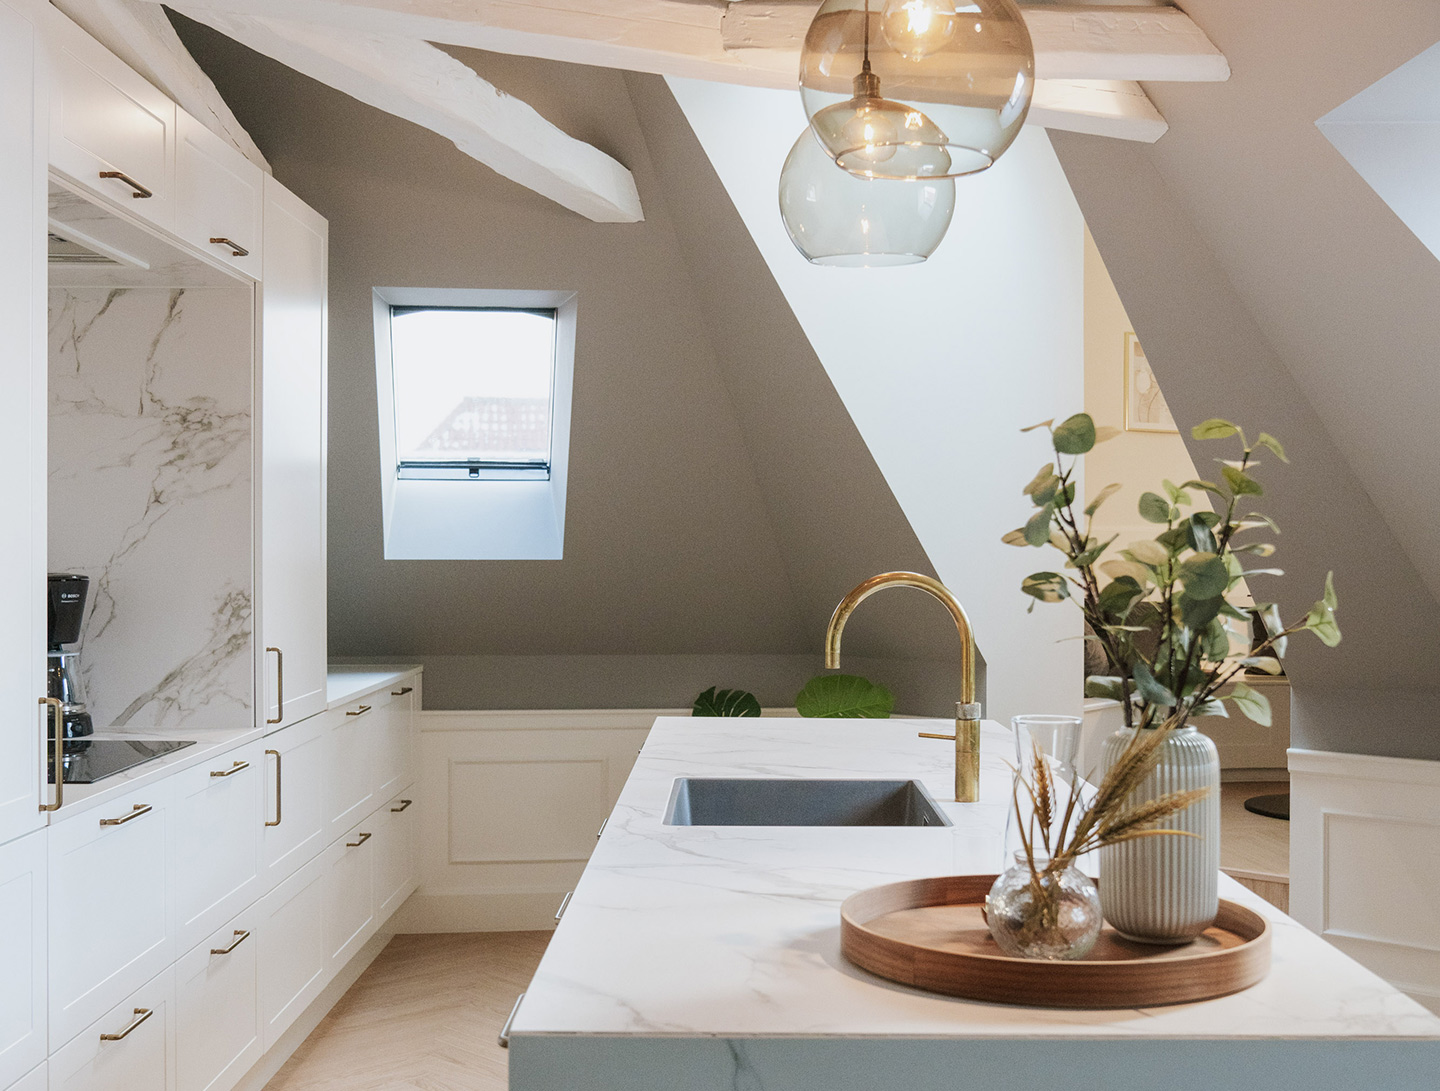 Image of Case Ankerhus cover kitchen in Dekton kitchen from Elon Bogården won Kitchen of the Year, Sweden - Cosentino